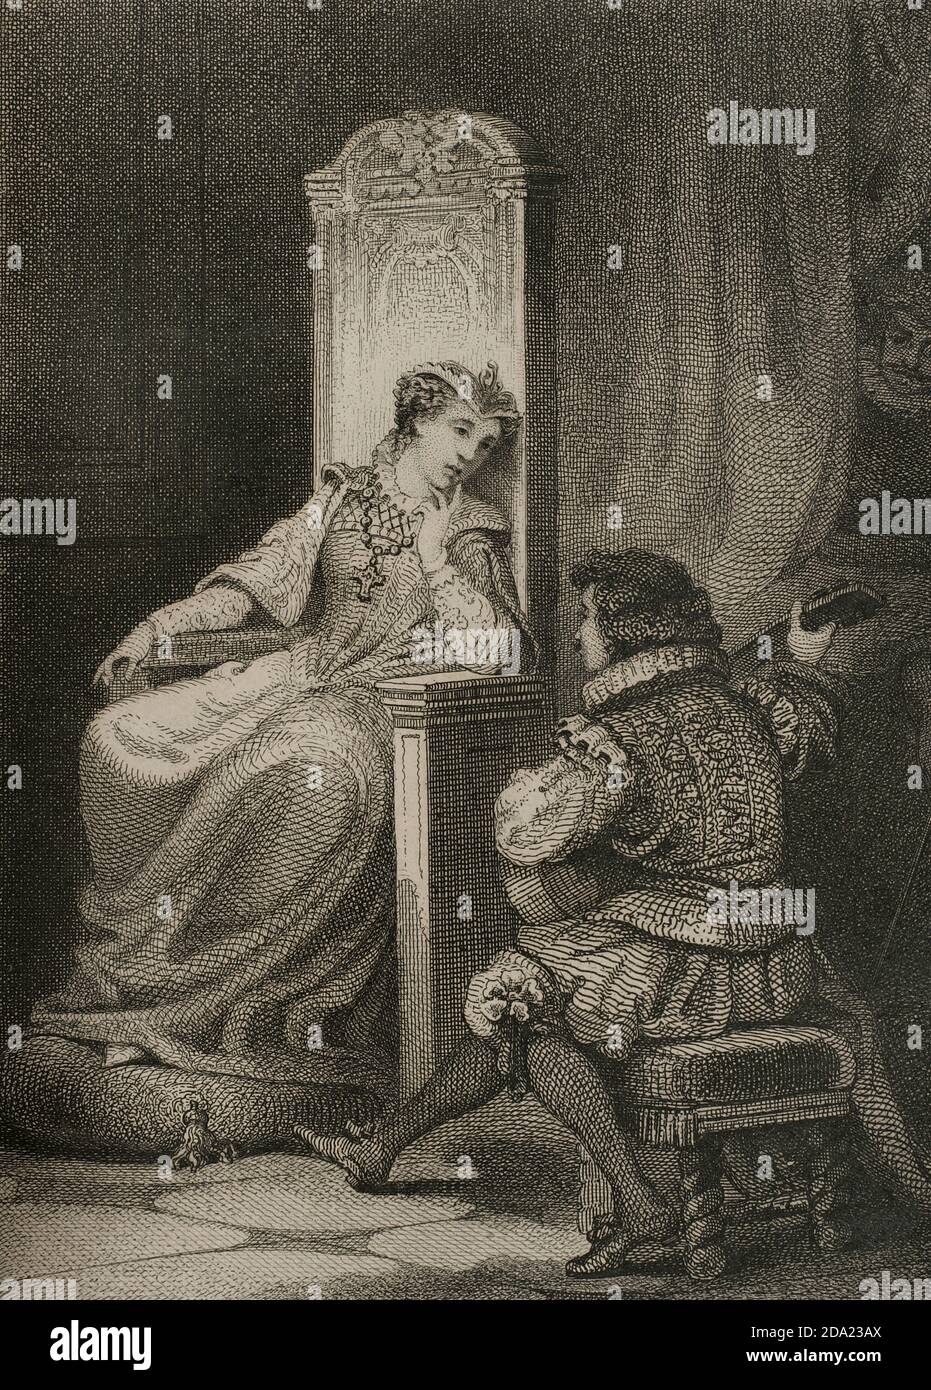 Maria Estuardo. Maria i de Escocia (1542-1587). Reina de Escocia (1542-1567). Tras su matrimonio con Francisco II de Francia, ocupó a lado el trono de Francia (1559). Estuvo dieciocho años prisionera y fué condenada a muerte por conspirar contra la vida de la reina de Inglaterra. En febrero de 1587 la reina Isabel i de Inglaterra ordenó decapitar a María Estuardo, muriendo como una mártir católica. Grado con una escena de David Rizzio (1533-1566), cortesano english secretario privado de María Estuardo, tocando la guitarra para la reina. Por J. Furnó. Historia de las per Foto Stock